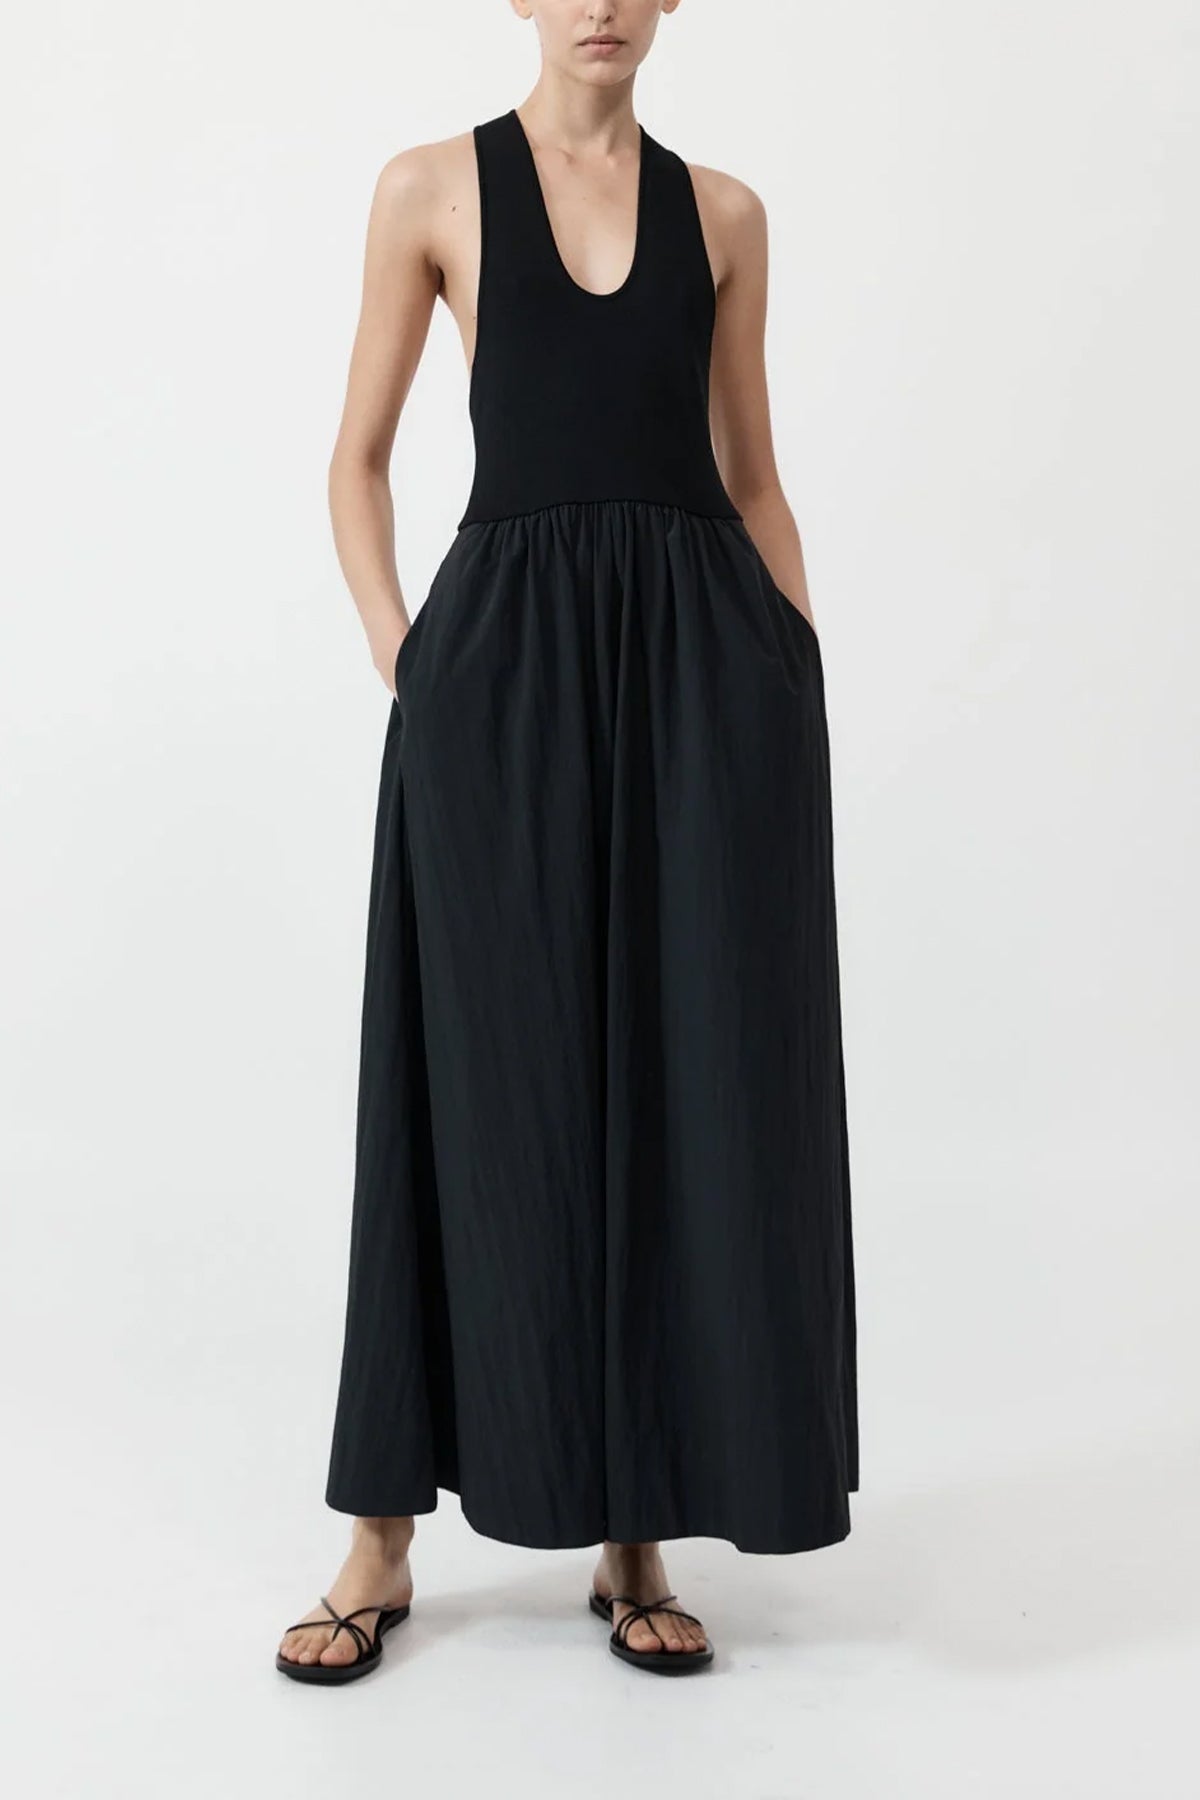 Plunge Neck Dress in Black - shop-olivia.com